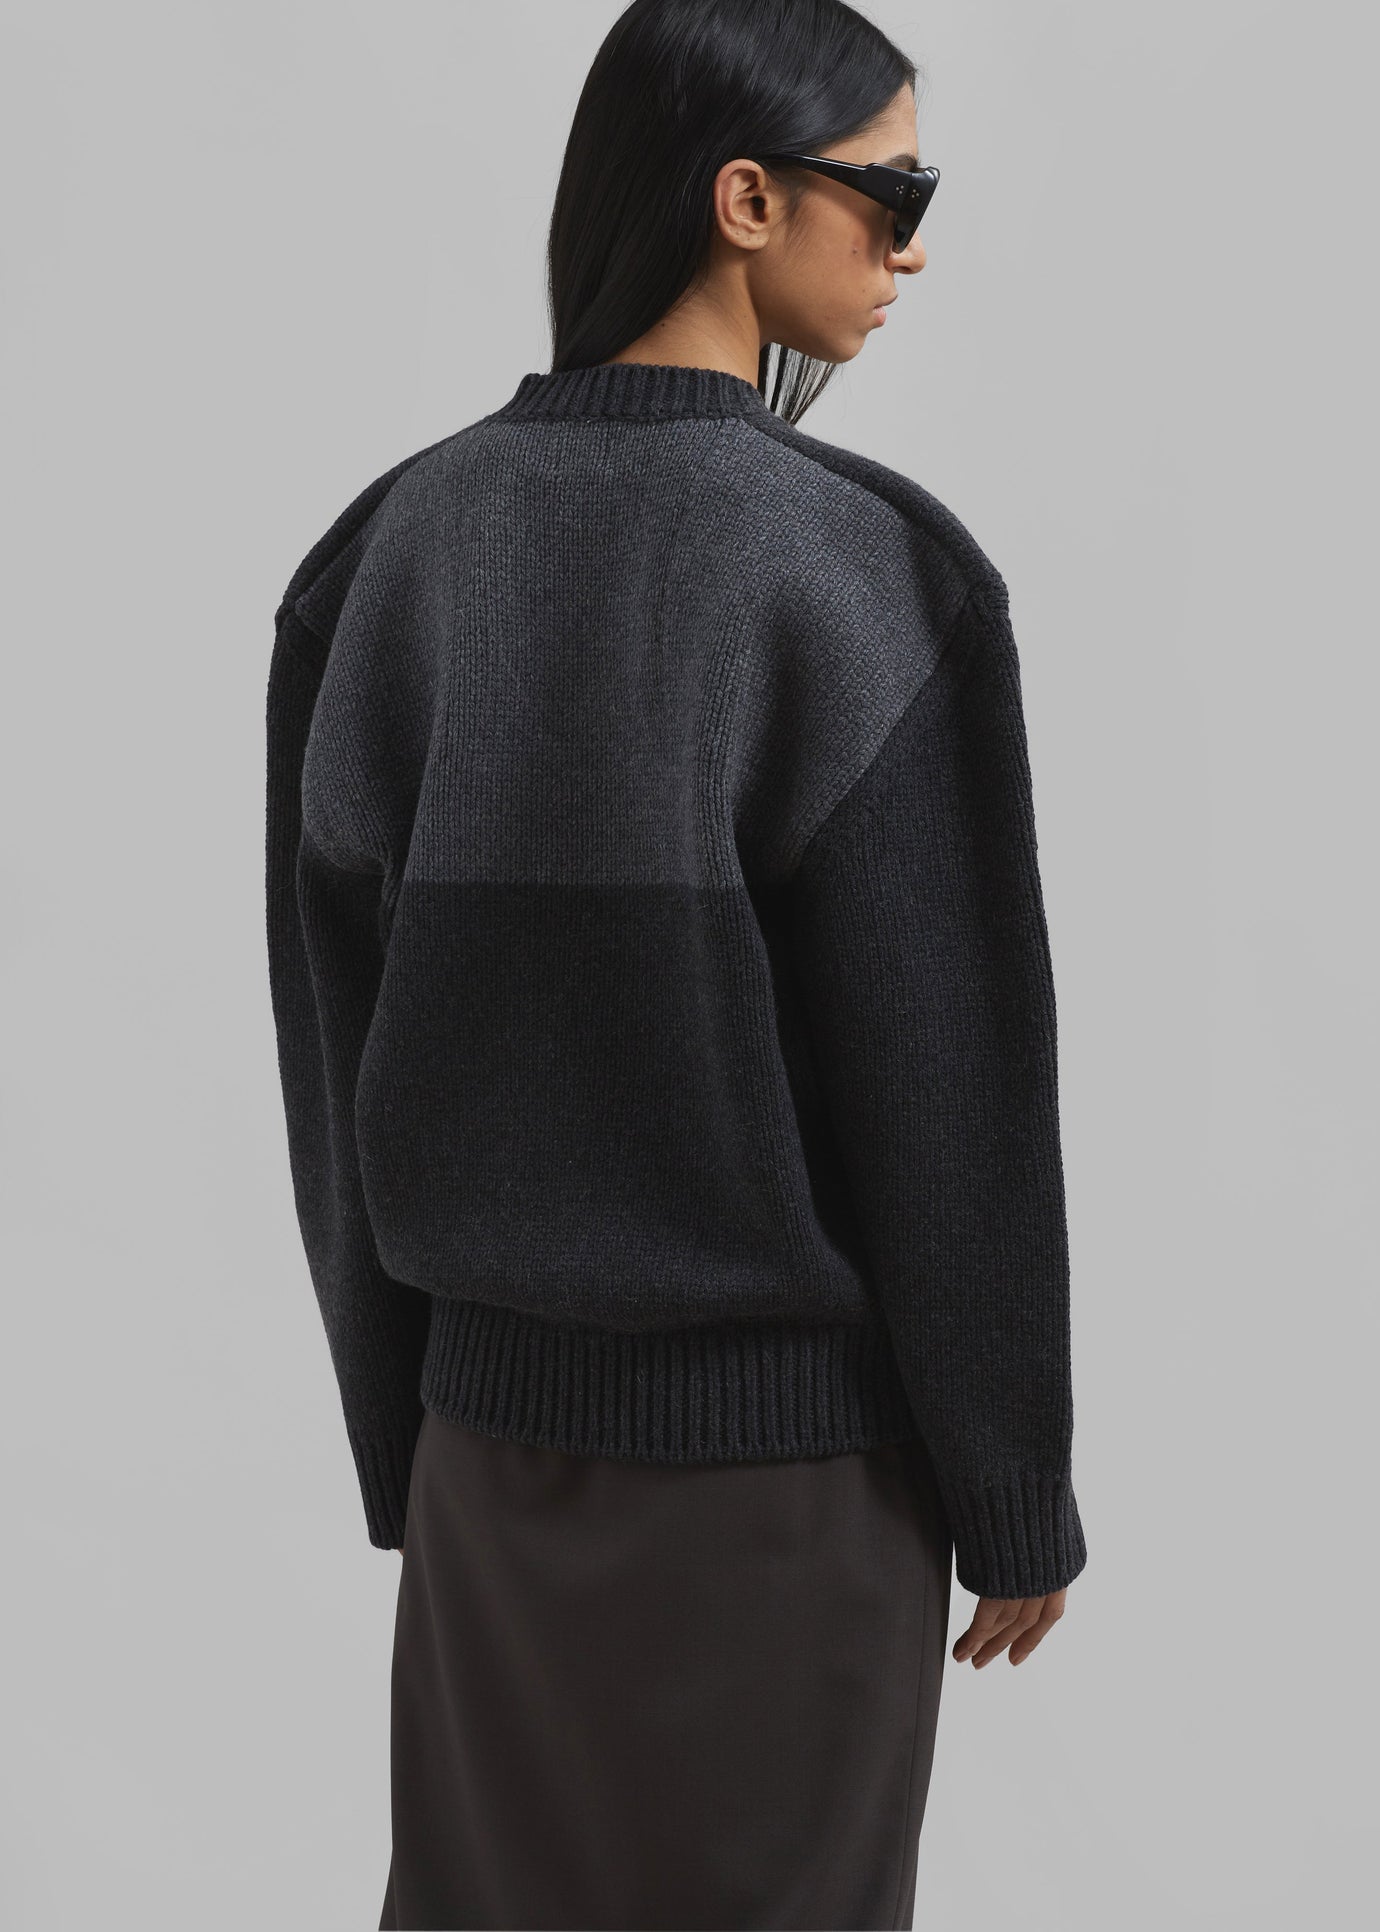 Edina Two Tone Wool Sweater - Charcoal - 1